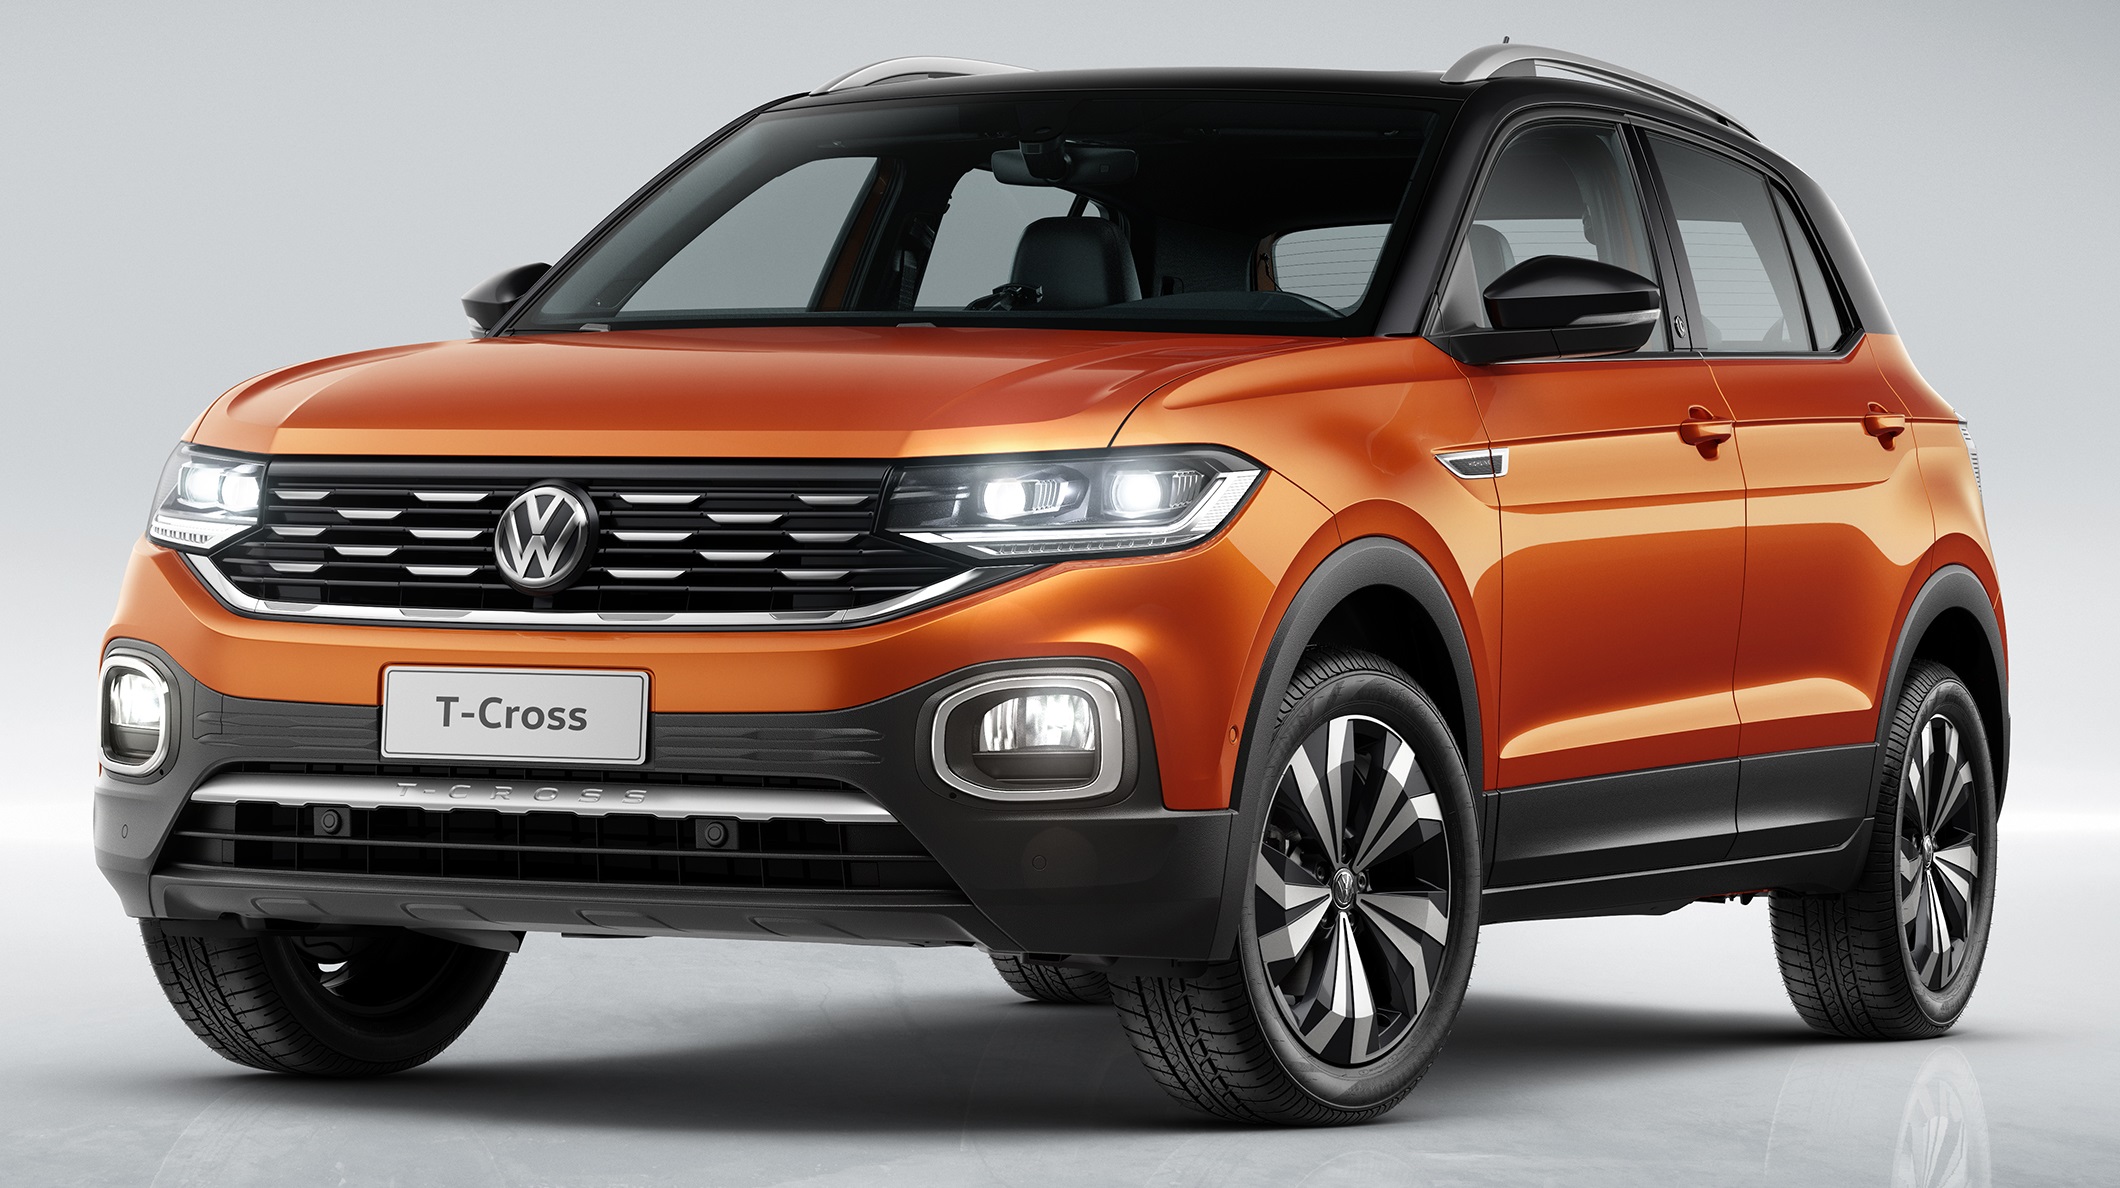 Novo SUV da Volkswagen, TCross estreia série de vídeos